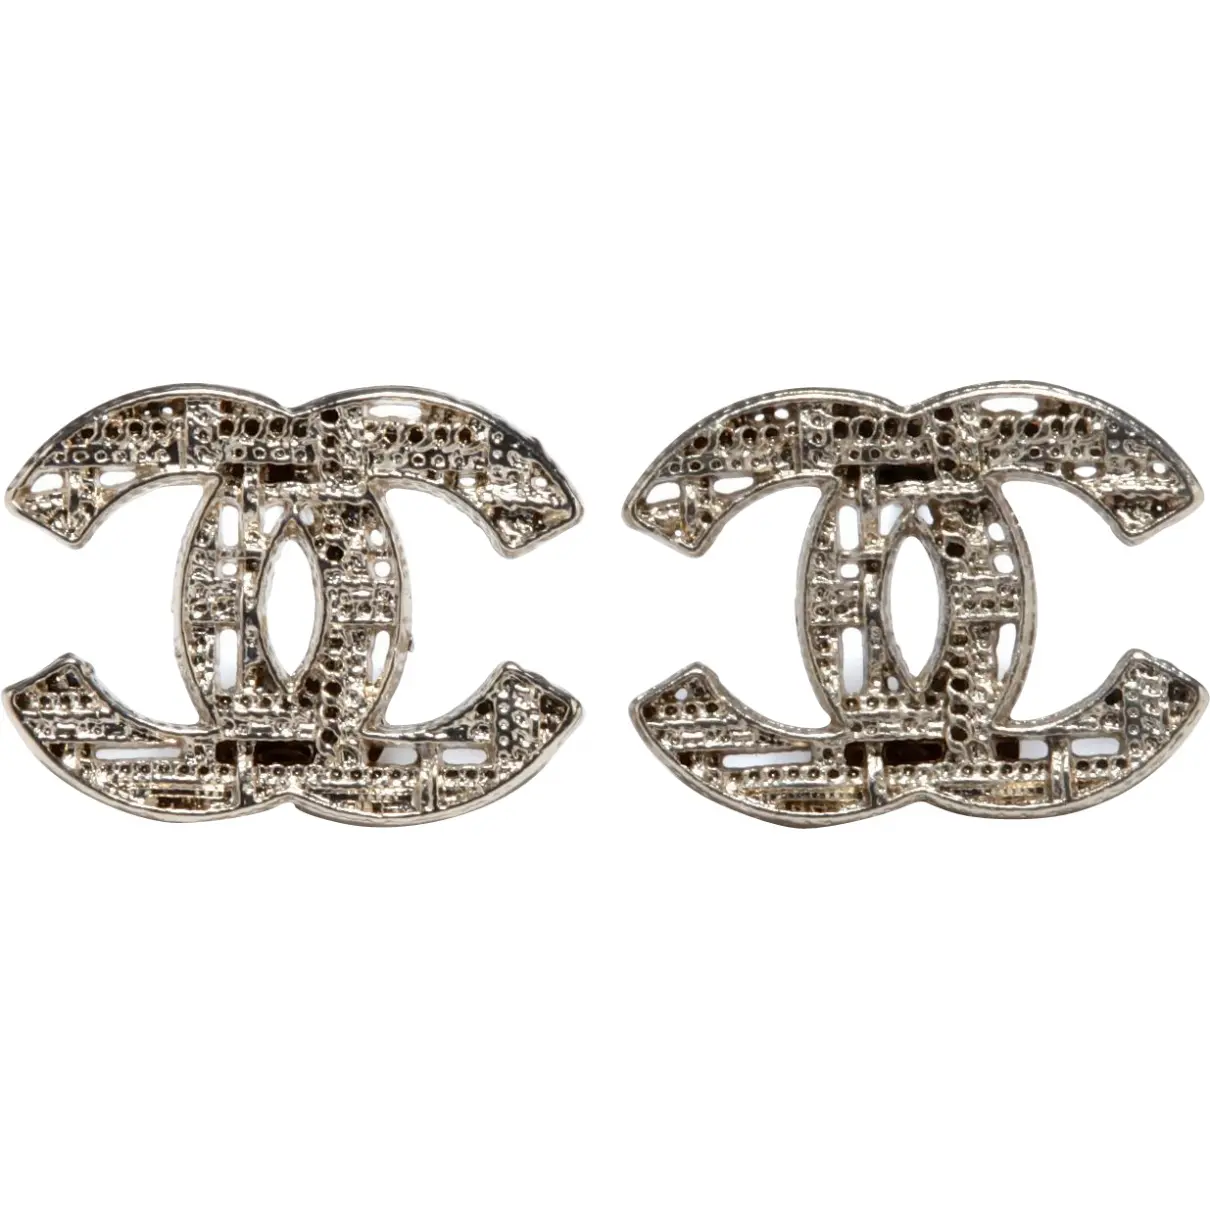 Silver Metal Earrings Chanel